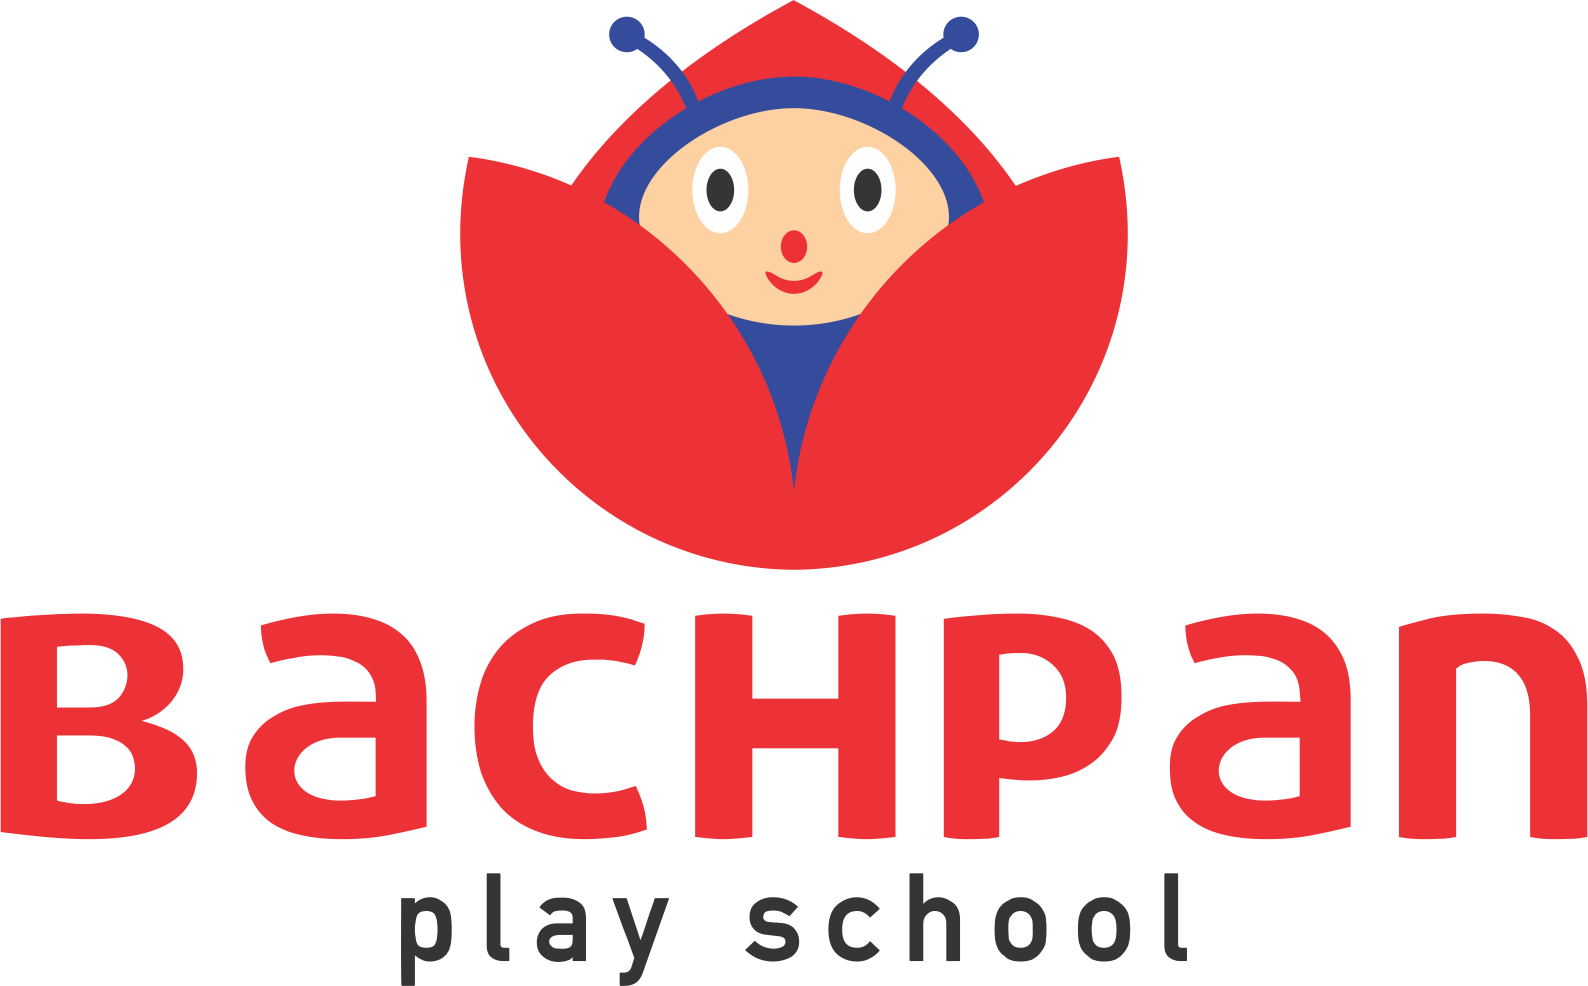 Bachpan Play School Bhagwasti logo